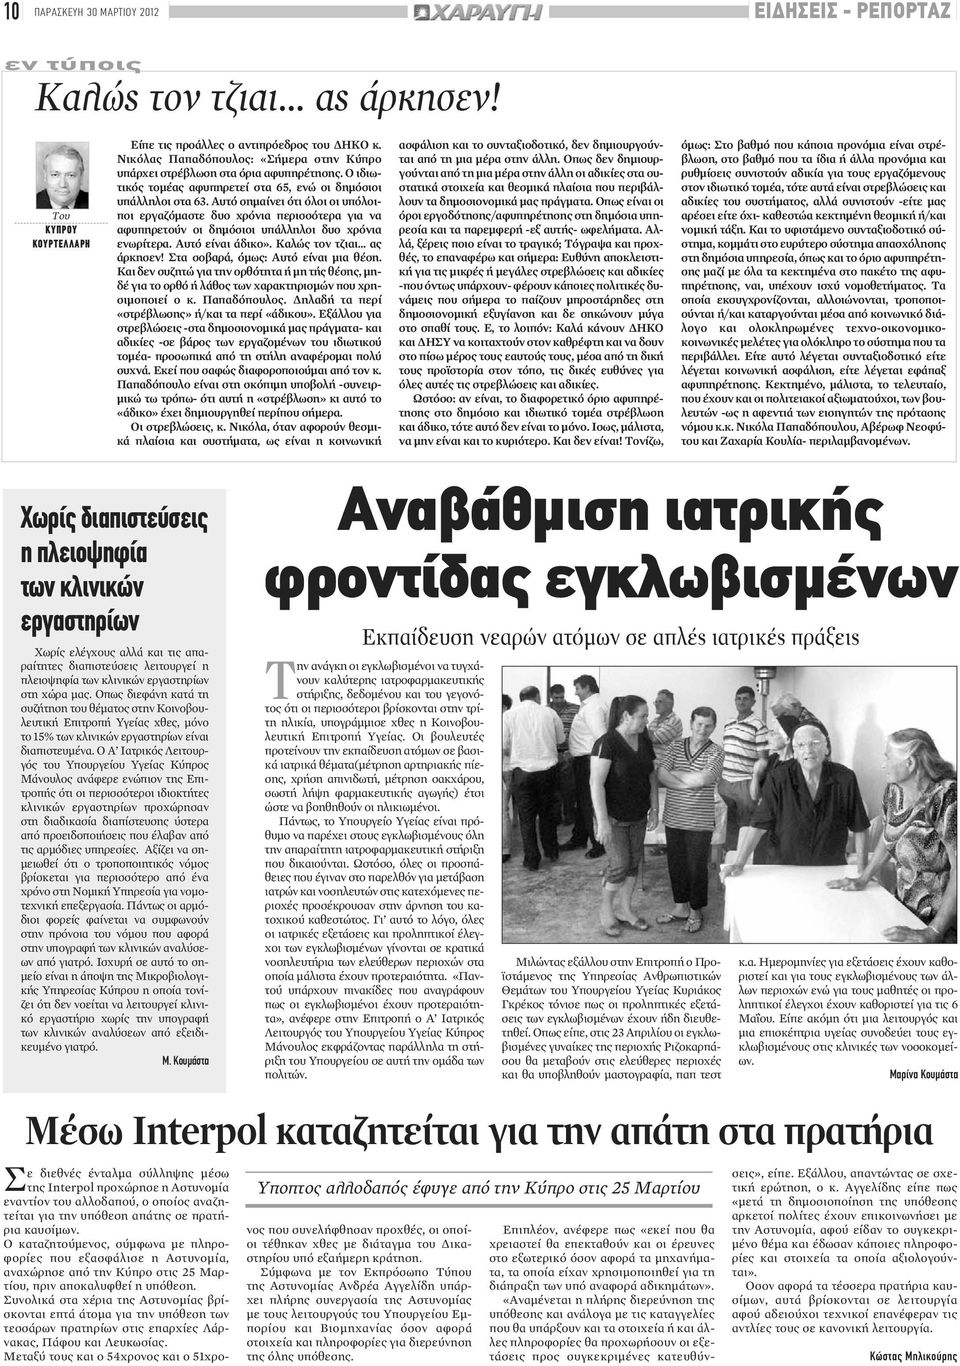 Νικόλας Παπαδόπουλος: «Σήμερα στην Κύπρο υπάρχει στρέβλωση στα όρια αφυπηρέτησης. Ο ιδιωτικός τομέας αφυπηρετεί στα 65, ενώ οι δημόσιοι υπάλληλοι στα 63.